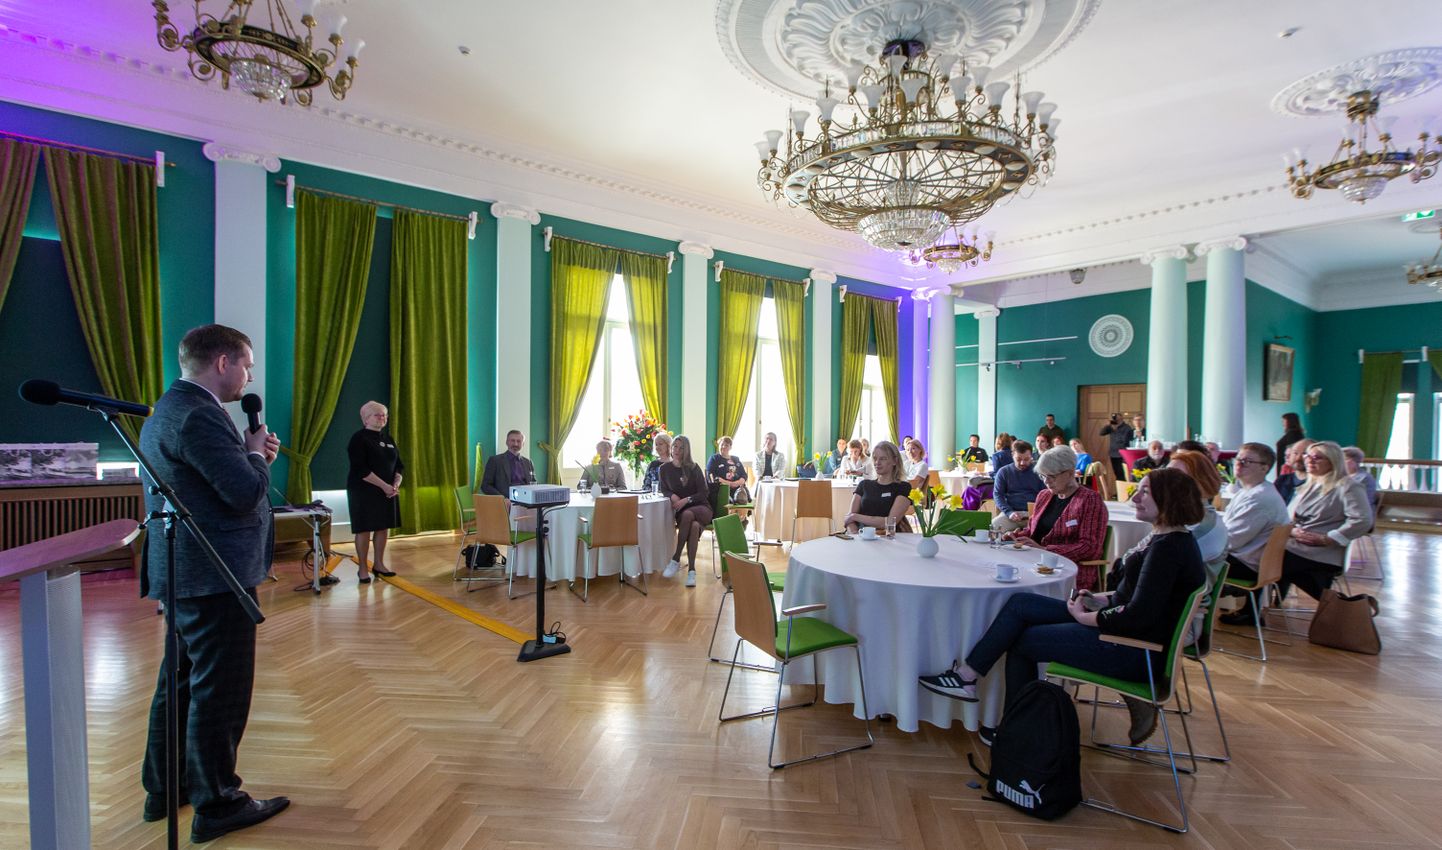 Kultuurifoorum Kohtla-Järve kultuurikeskuses keskendus loomemajanduse ja kultuuri rollile piirkonna majanduse mitmekesistamisel.